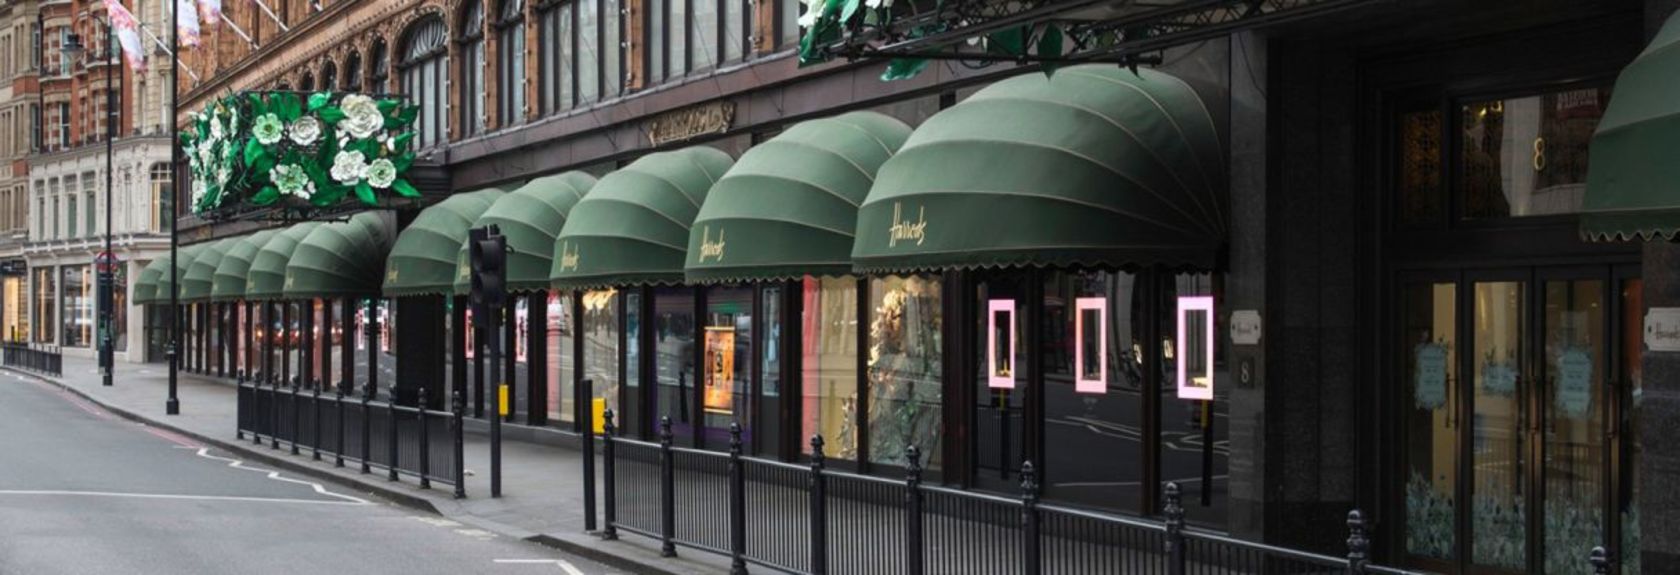 A loja de departamentos de luxo Harrods no distrito de Knightbridge é a mais famosa loja de departamentos de Londres e talvez a mais famosa do mundo. No total, a loja de luxo tem sete andares com uma área total de 4,5 hectares (cerca de 74 mil metros quadrados)